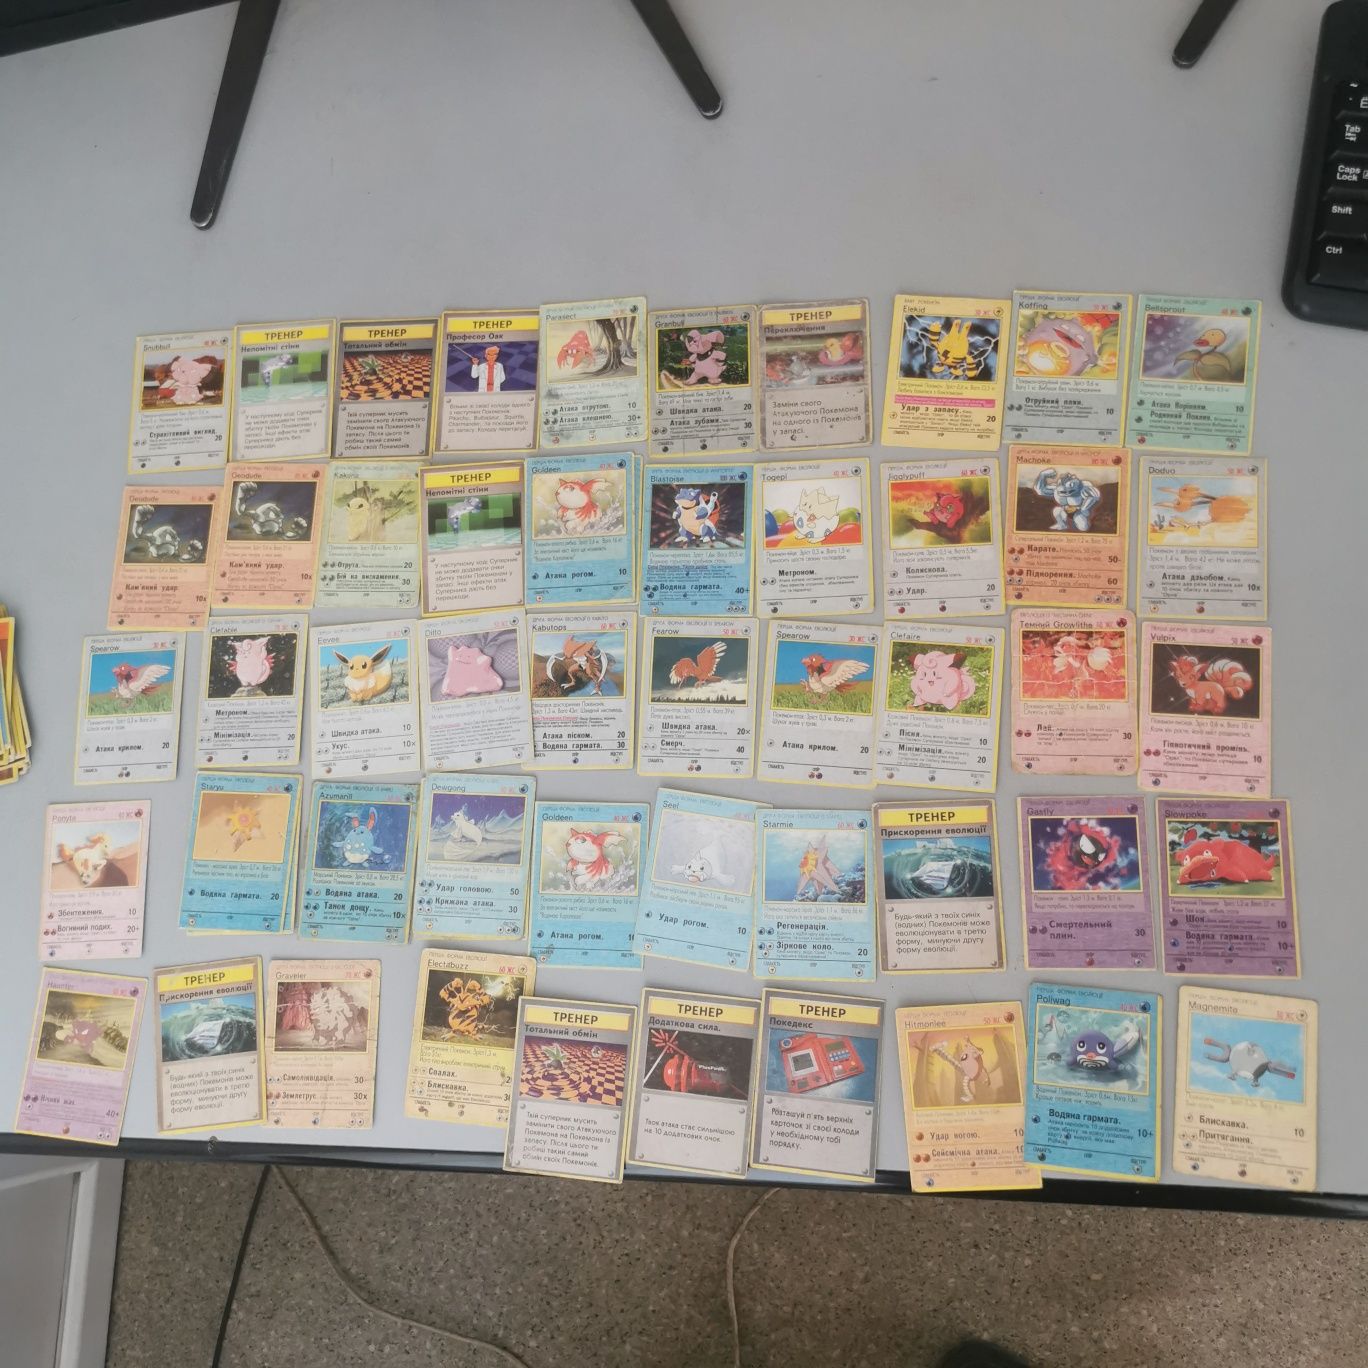 Картки покемон, карточки покемон, pokemon cards на украинском языке